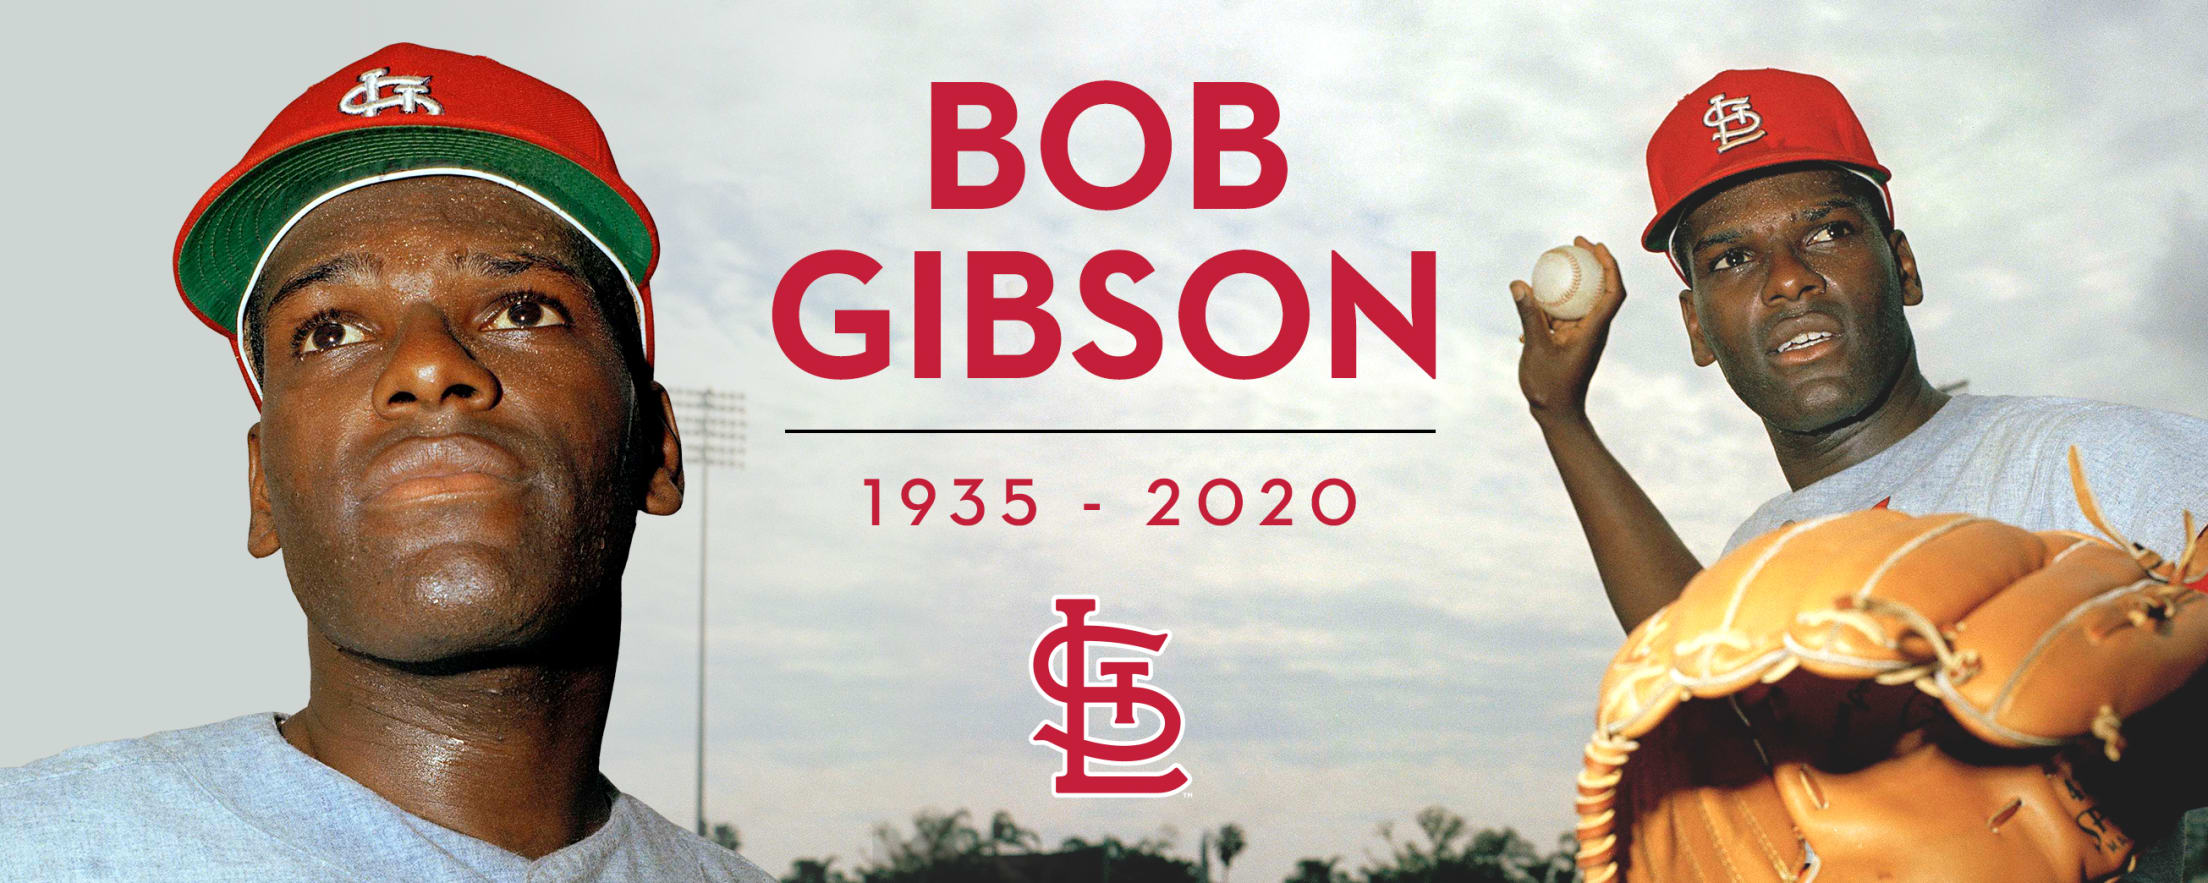 Bob Gibson - 1935-2020